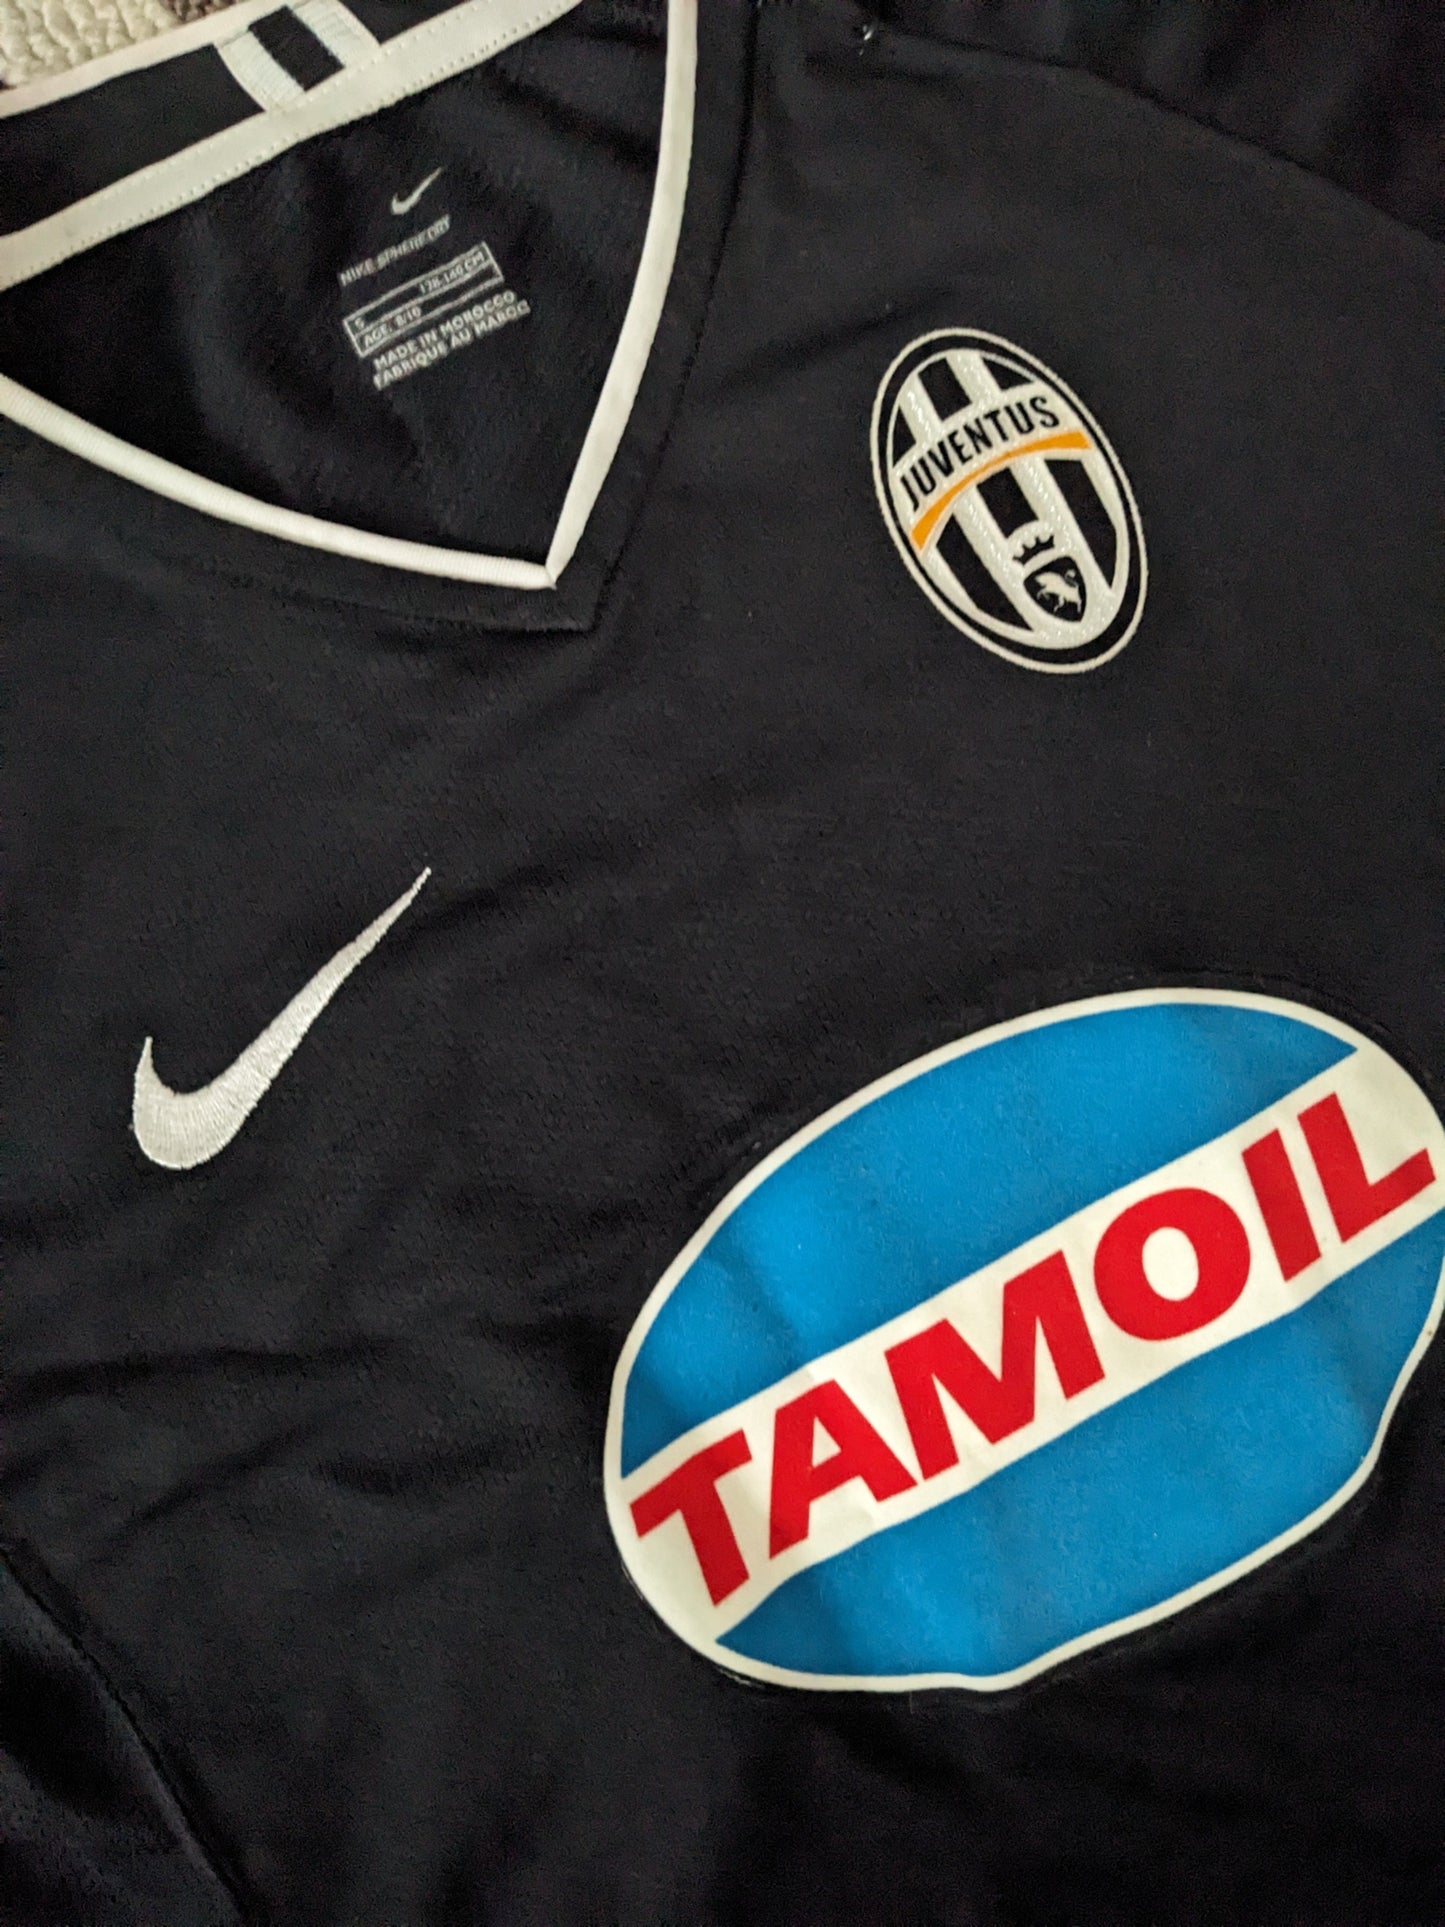 Juventus 2006/07 away (YOUTH S)